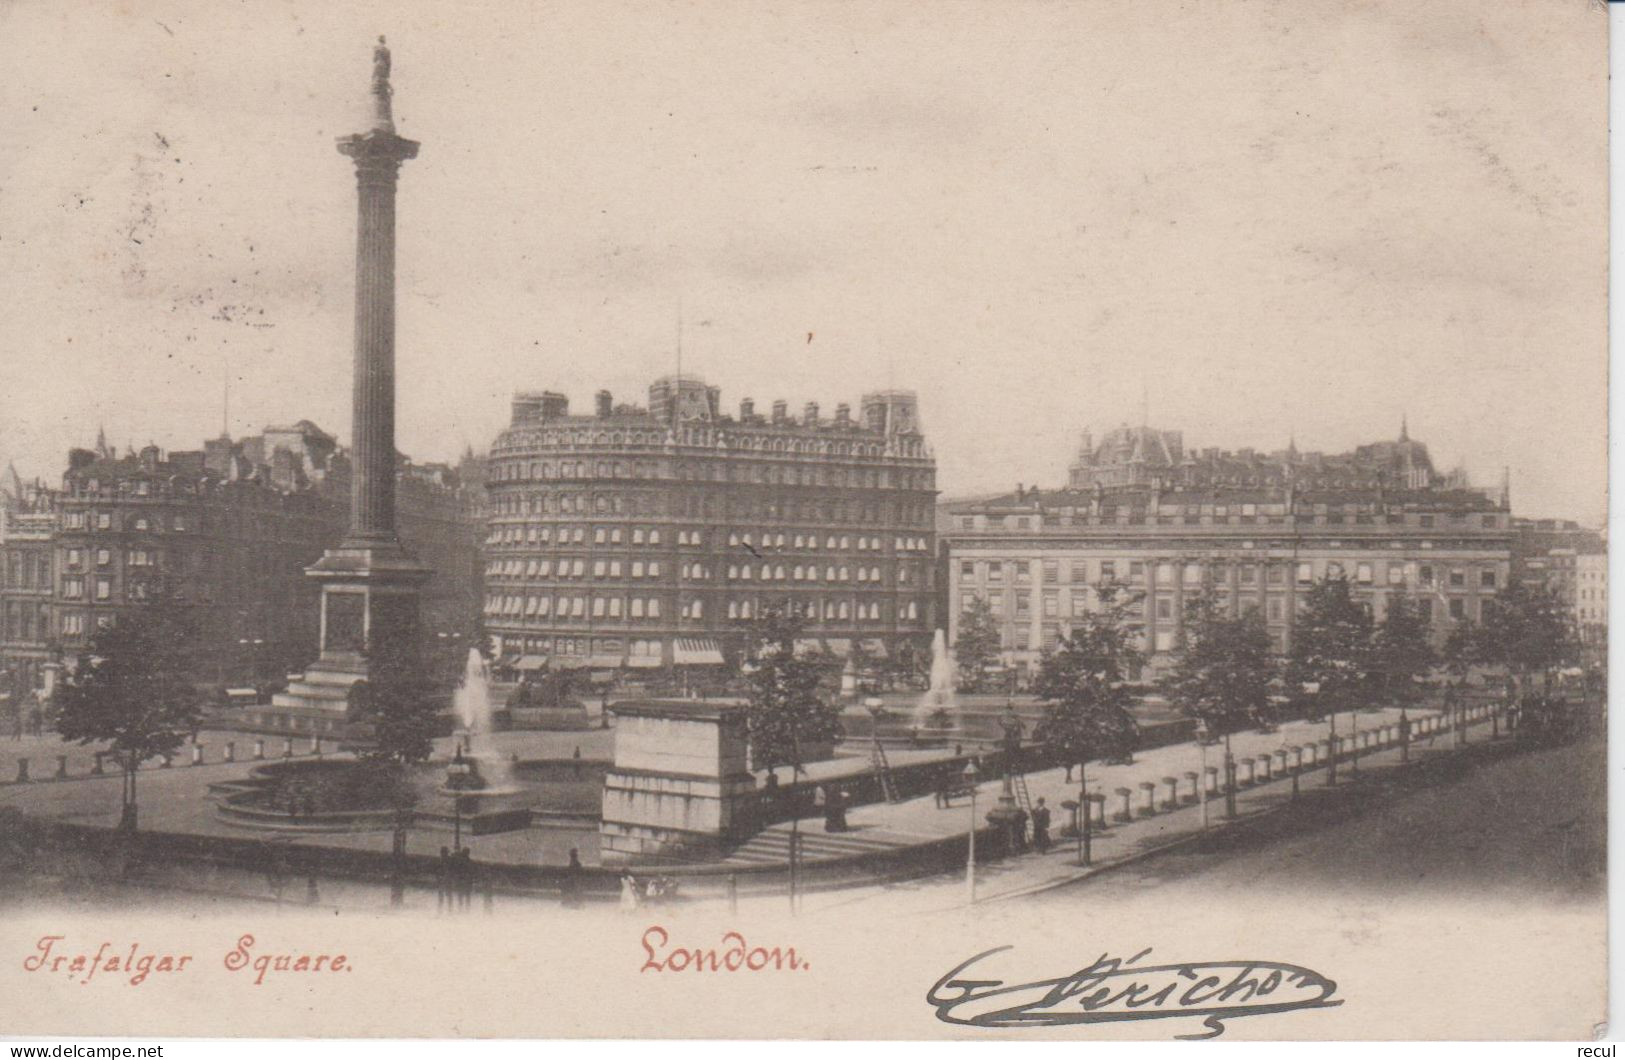 ANGLETERRE - LONDON - Trafalgar Square ( - Timbre à Date De 1903 ) - Trafalgar Square